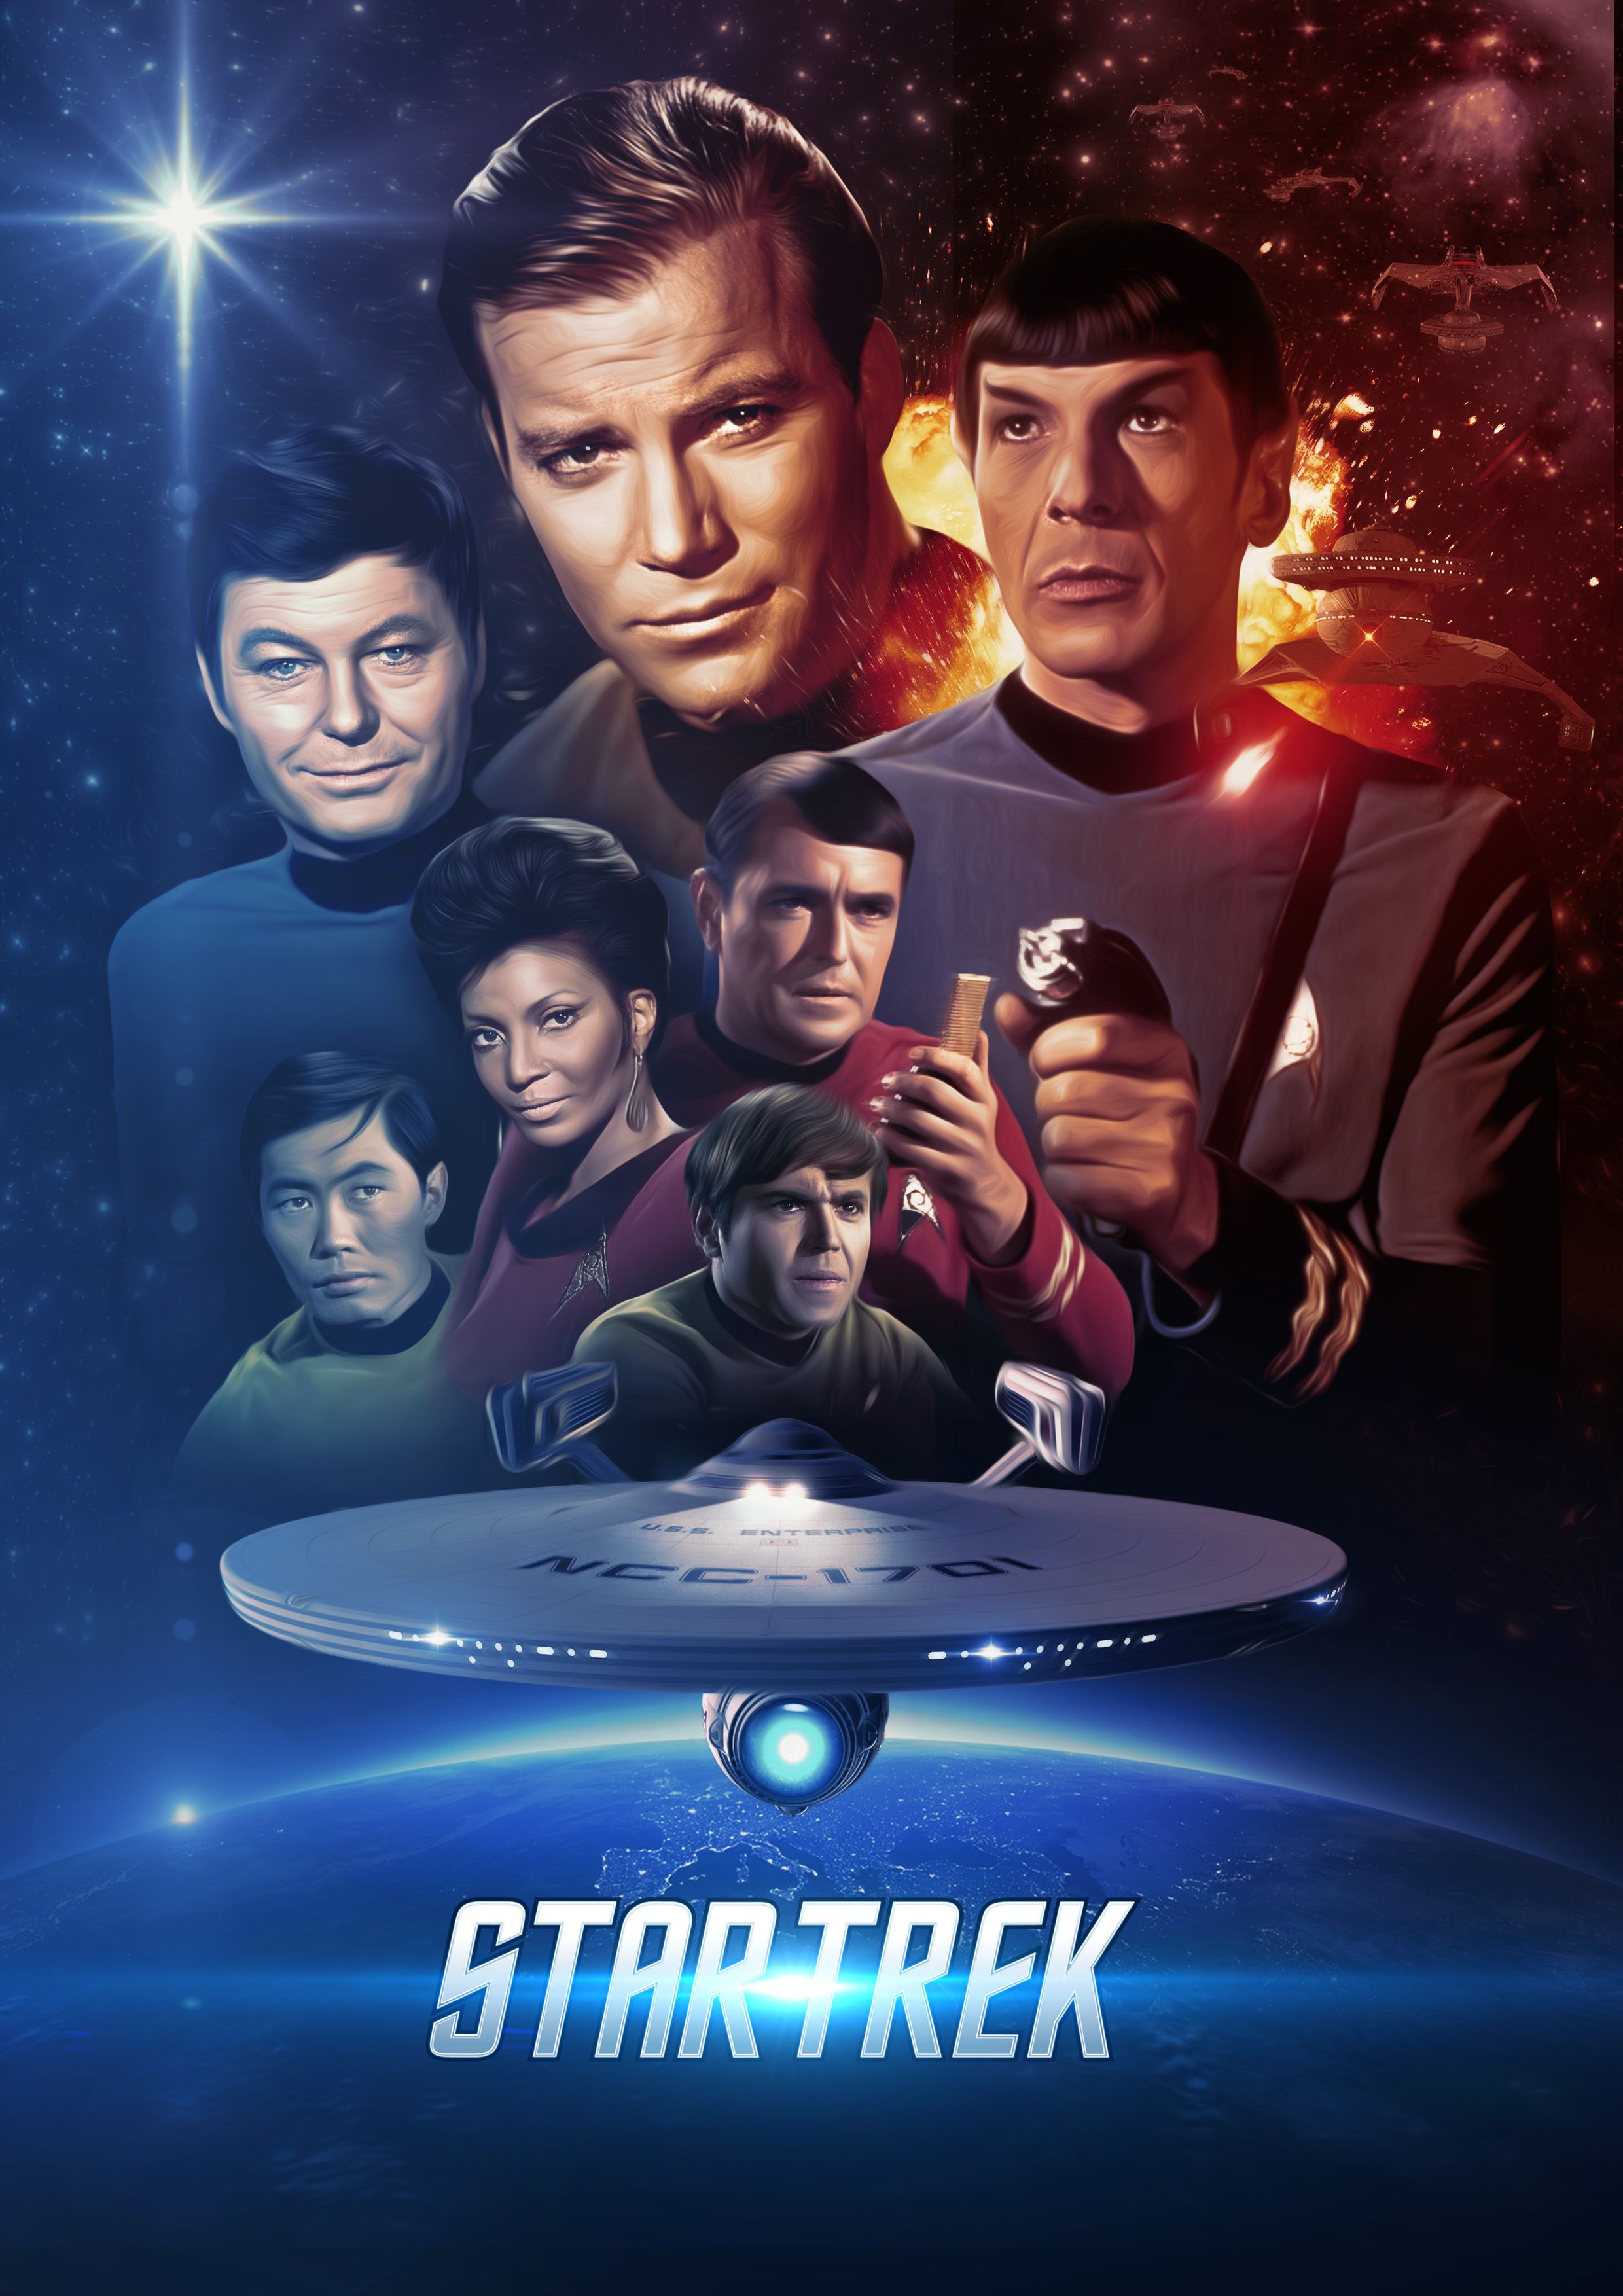 Star Trek: The Original Series (TV Series 1966–1969)